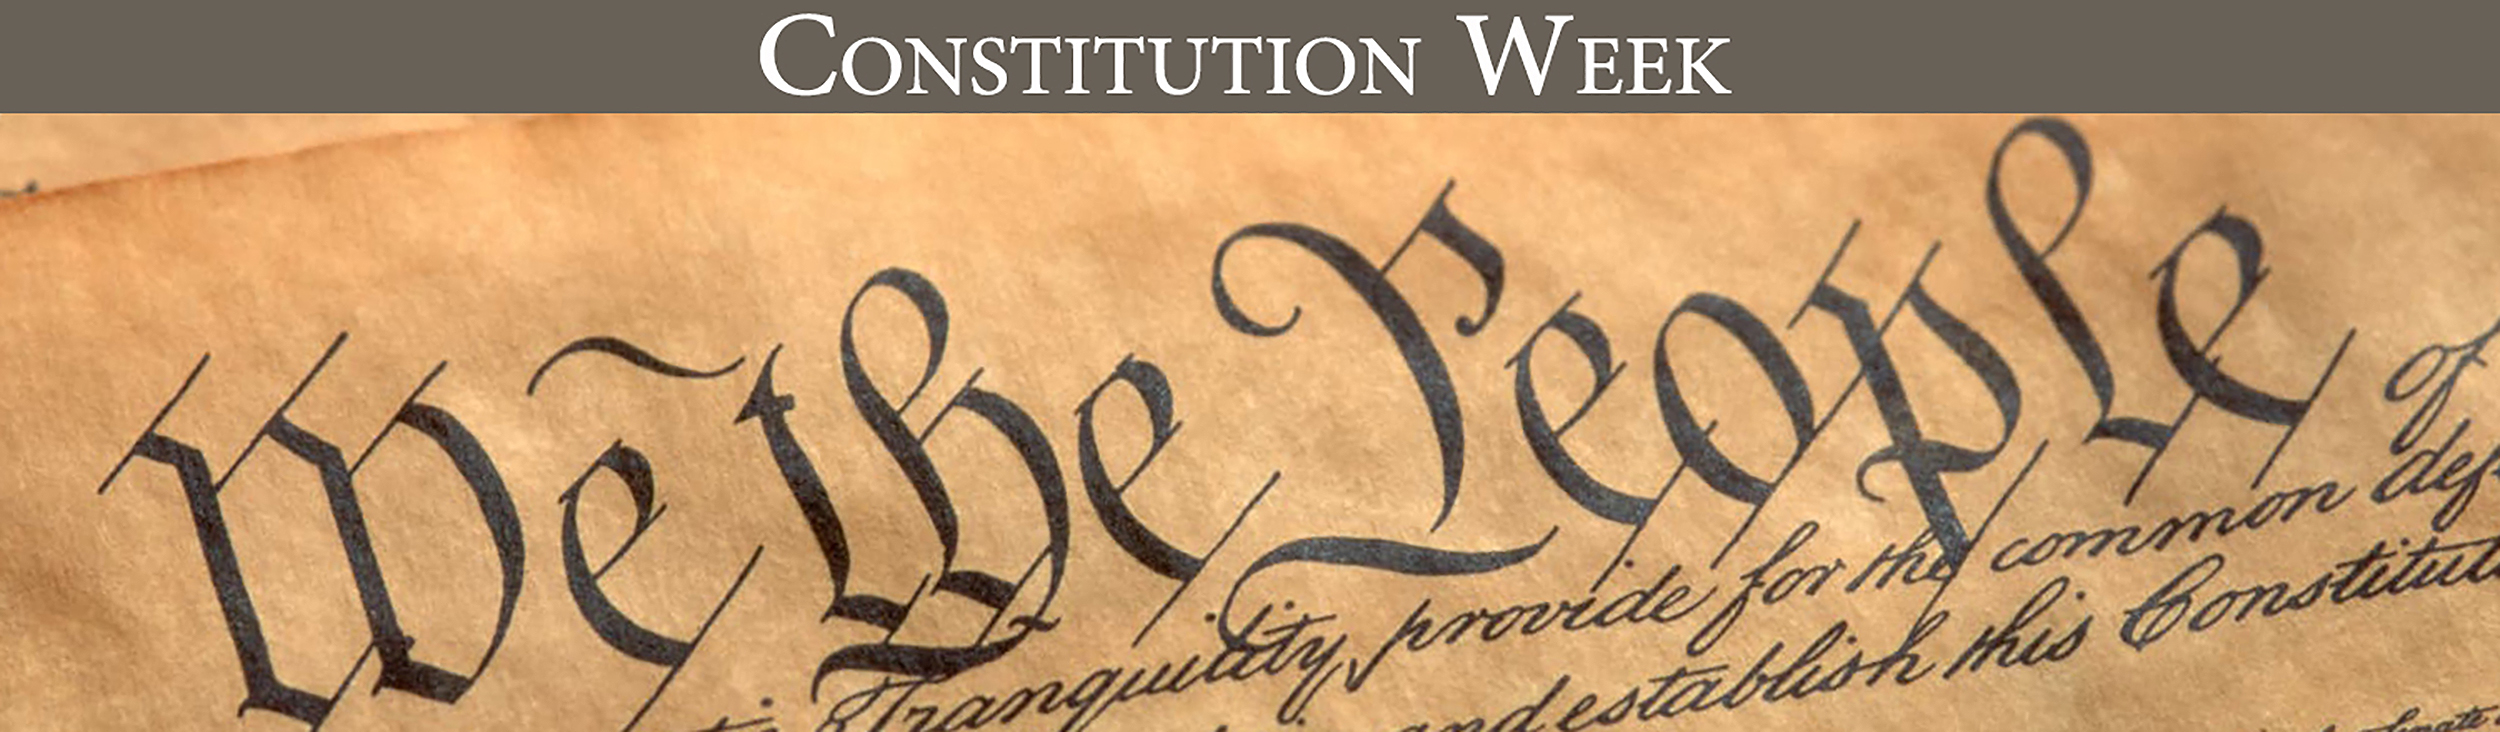 2018 Constitution Week